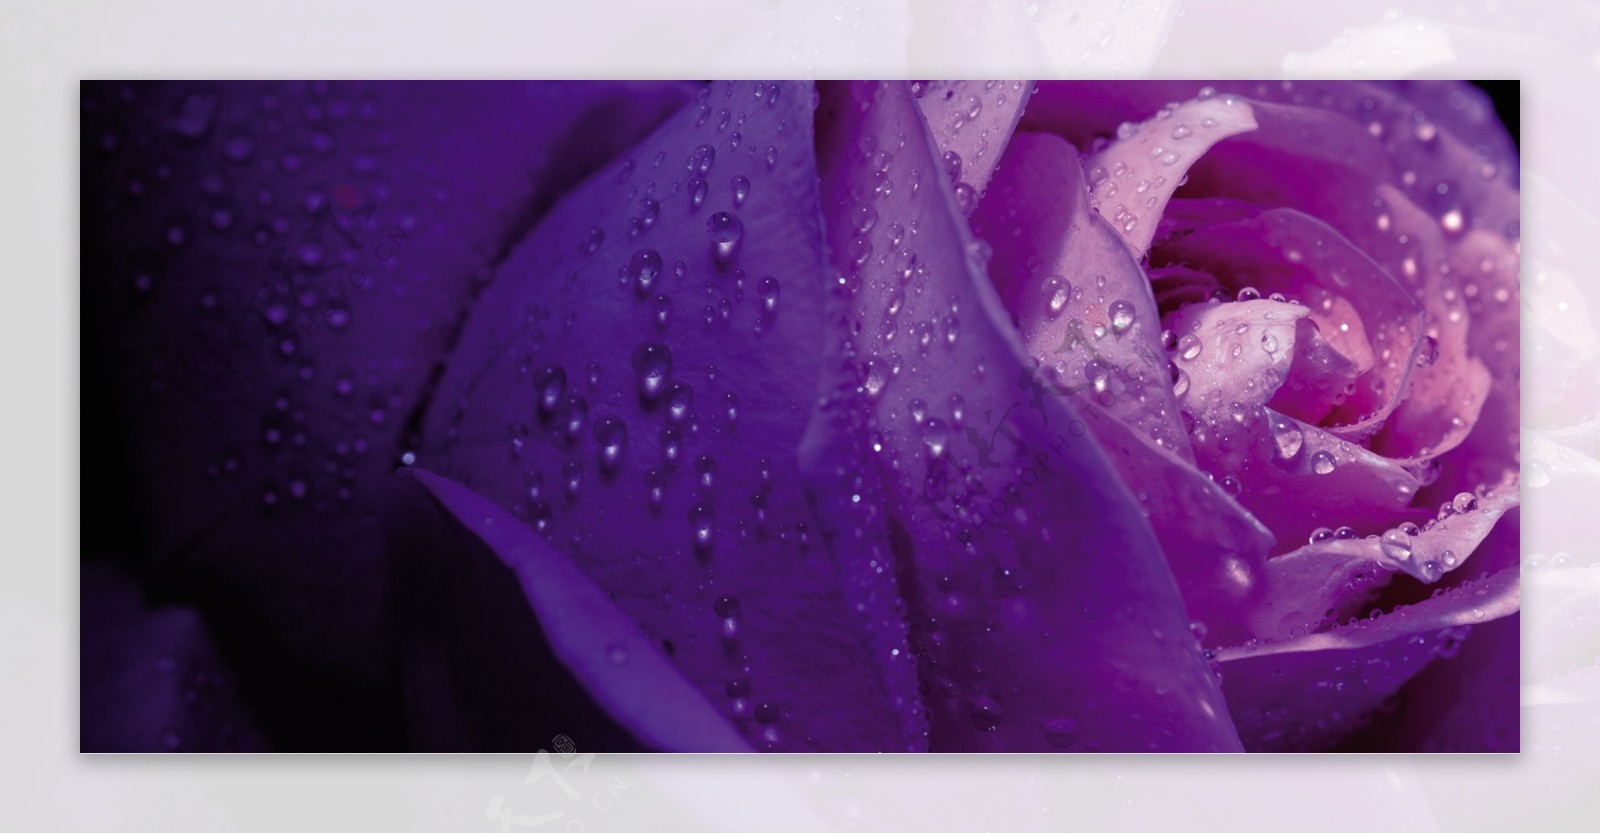 紫色玫瑰背景